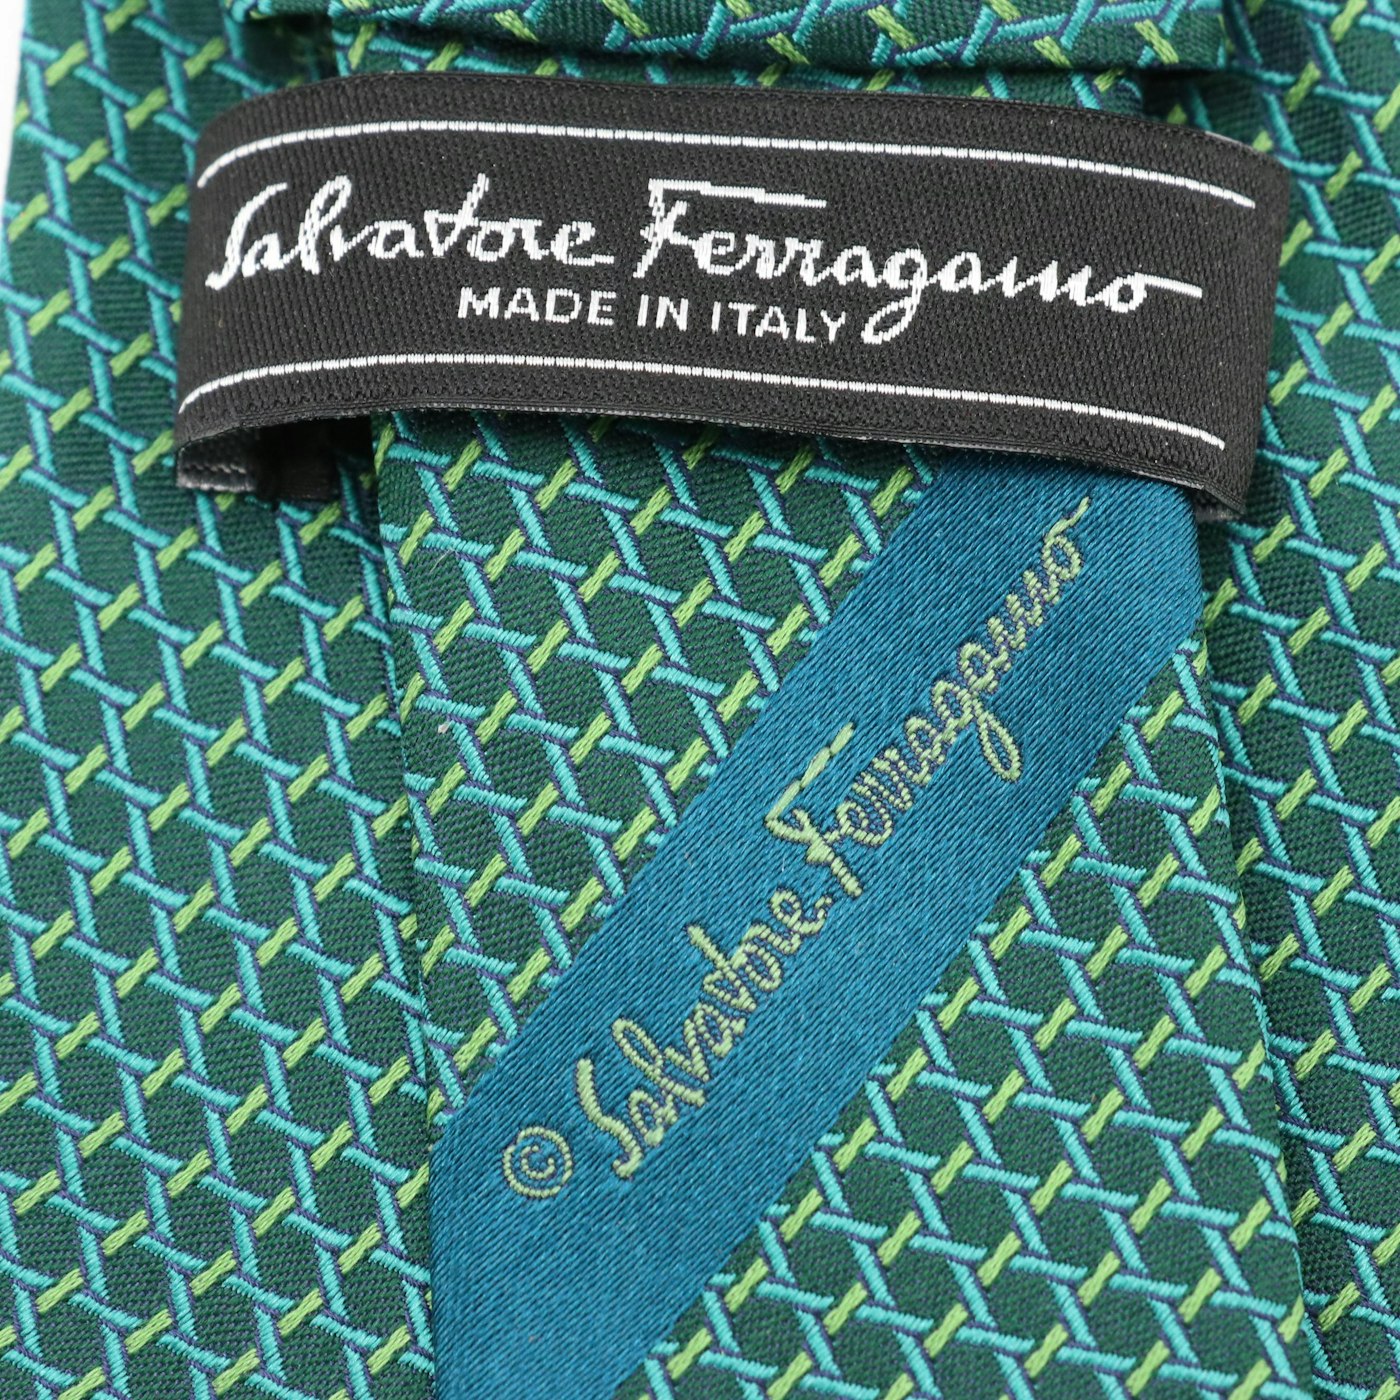 Salvatore Ferragamo Hand-Stitched Silk Necktie | EBTH